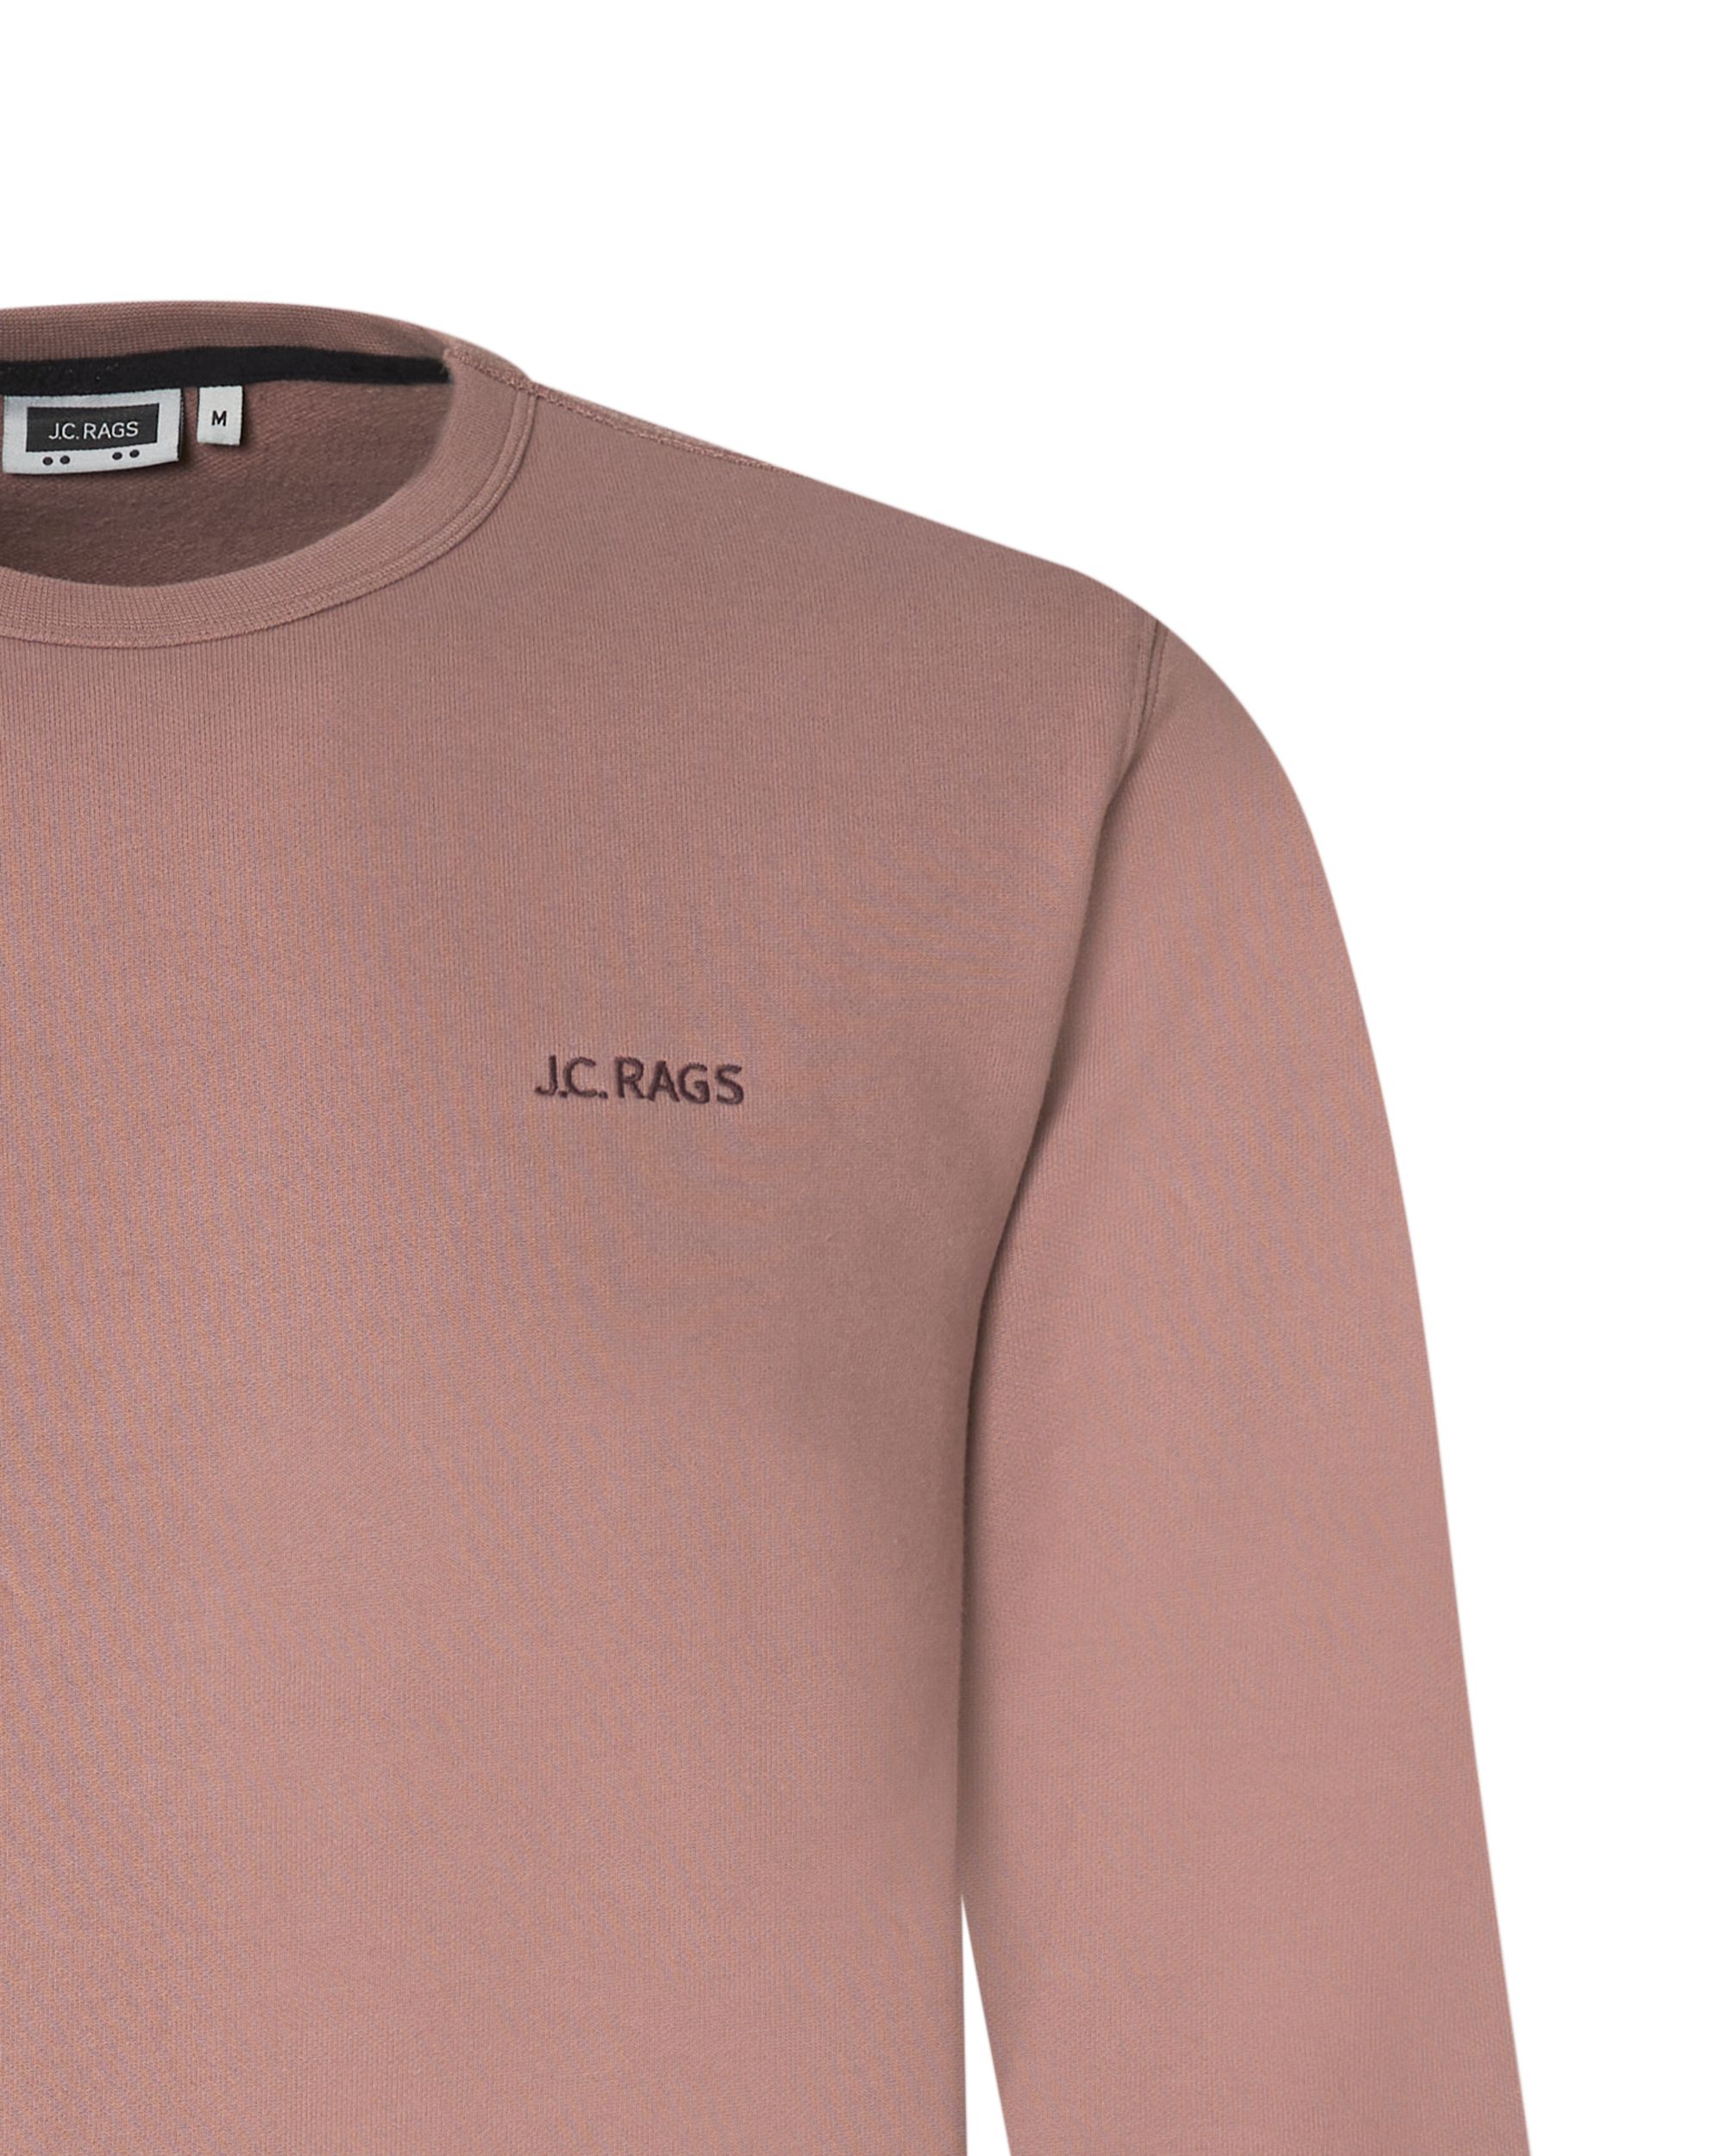 J.C. RAGS Jordan Sweater Roze uni 073069-008-L